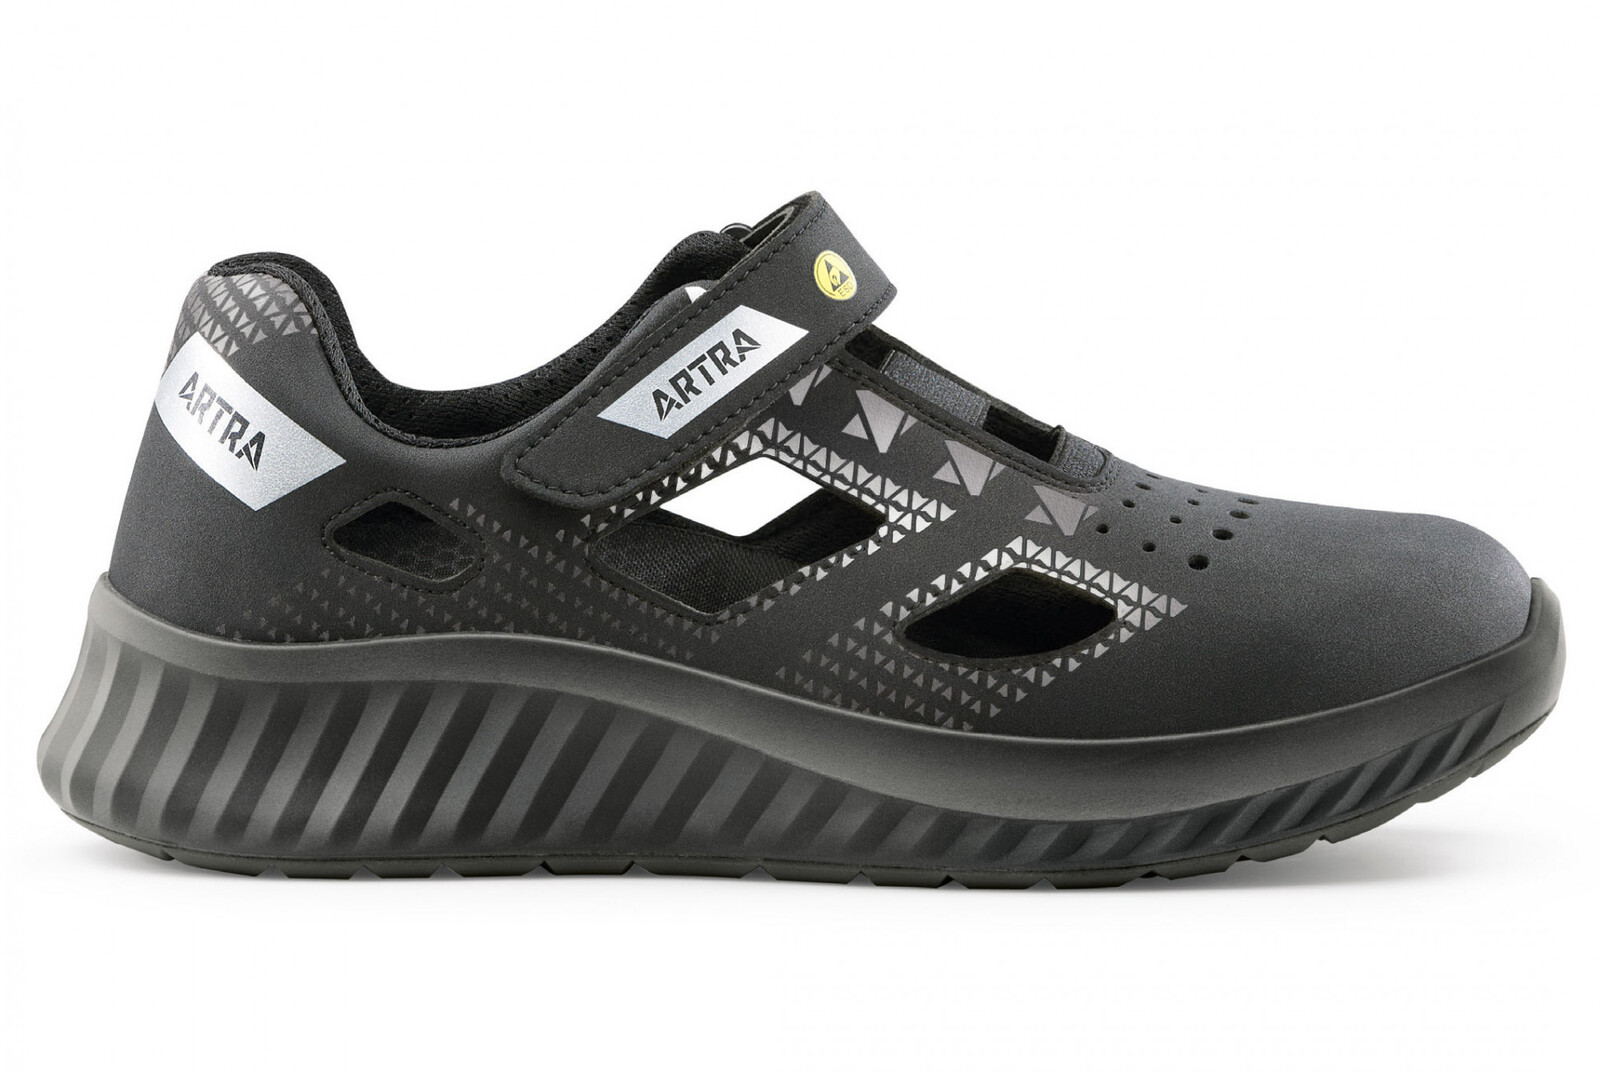 Bezpečnostné sandále Artra Arso 701 616560 S1P SRC ESD - veľkosť: 41, farba: čierna/sivá